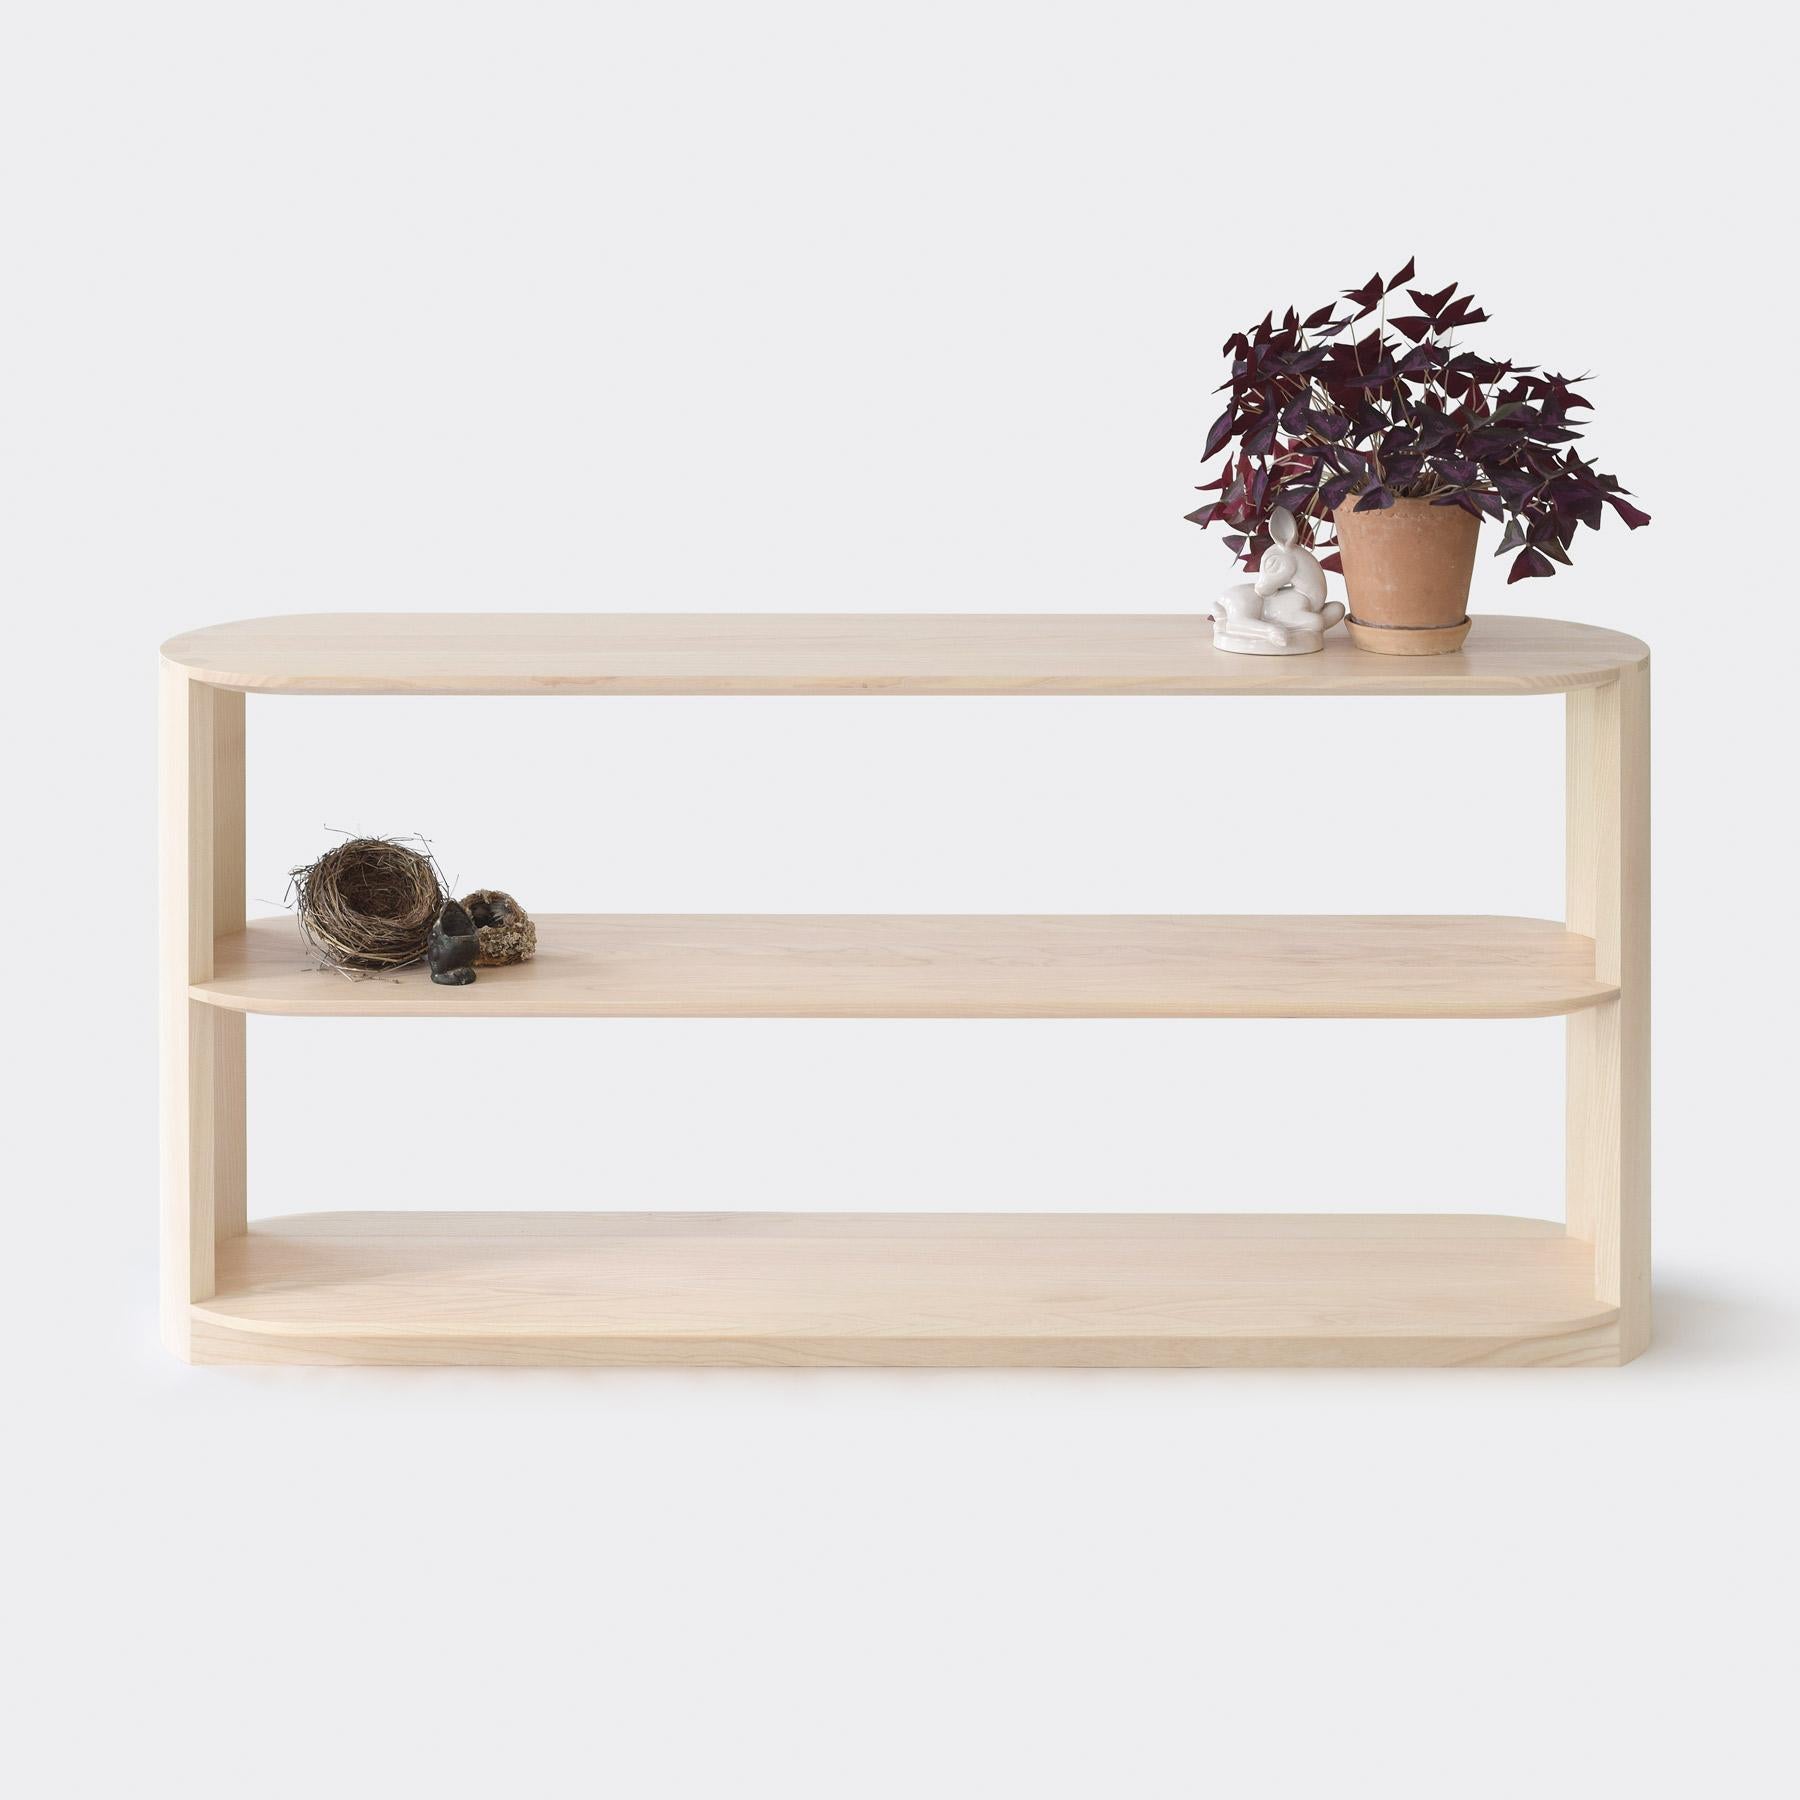 L'étagère Haiku, de style contemporain scandinave, est fabriquée en bois massif à l'aide d'une technique CNS moderne et d'un savoir-faire traditionnel, ce qui donne un produit d'une simplicité esthétique et d'un niveau de détail